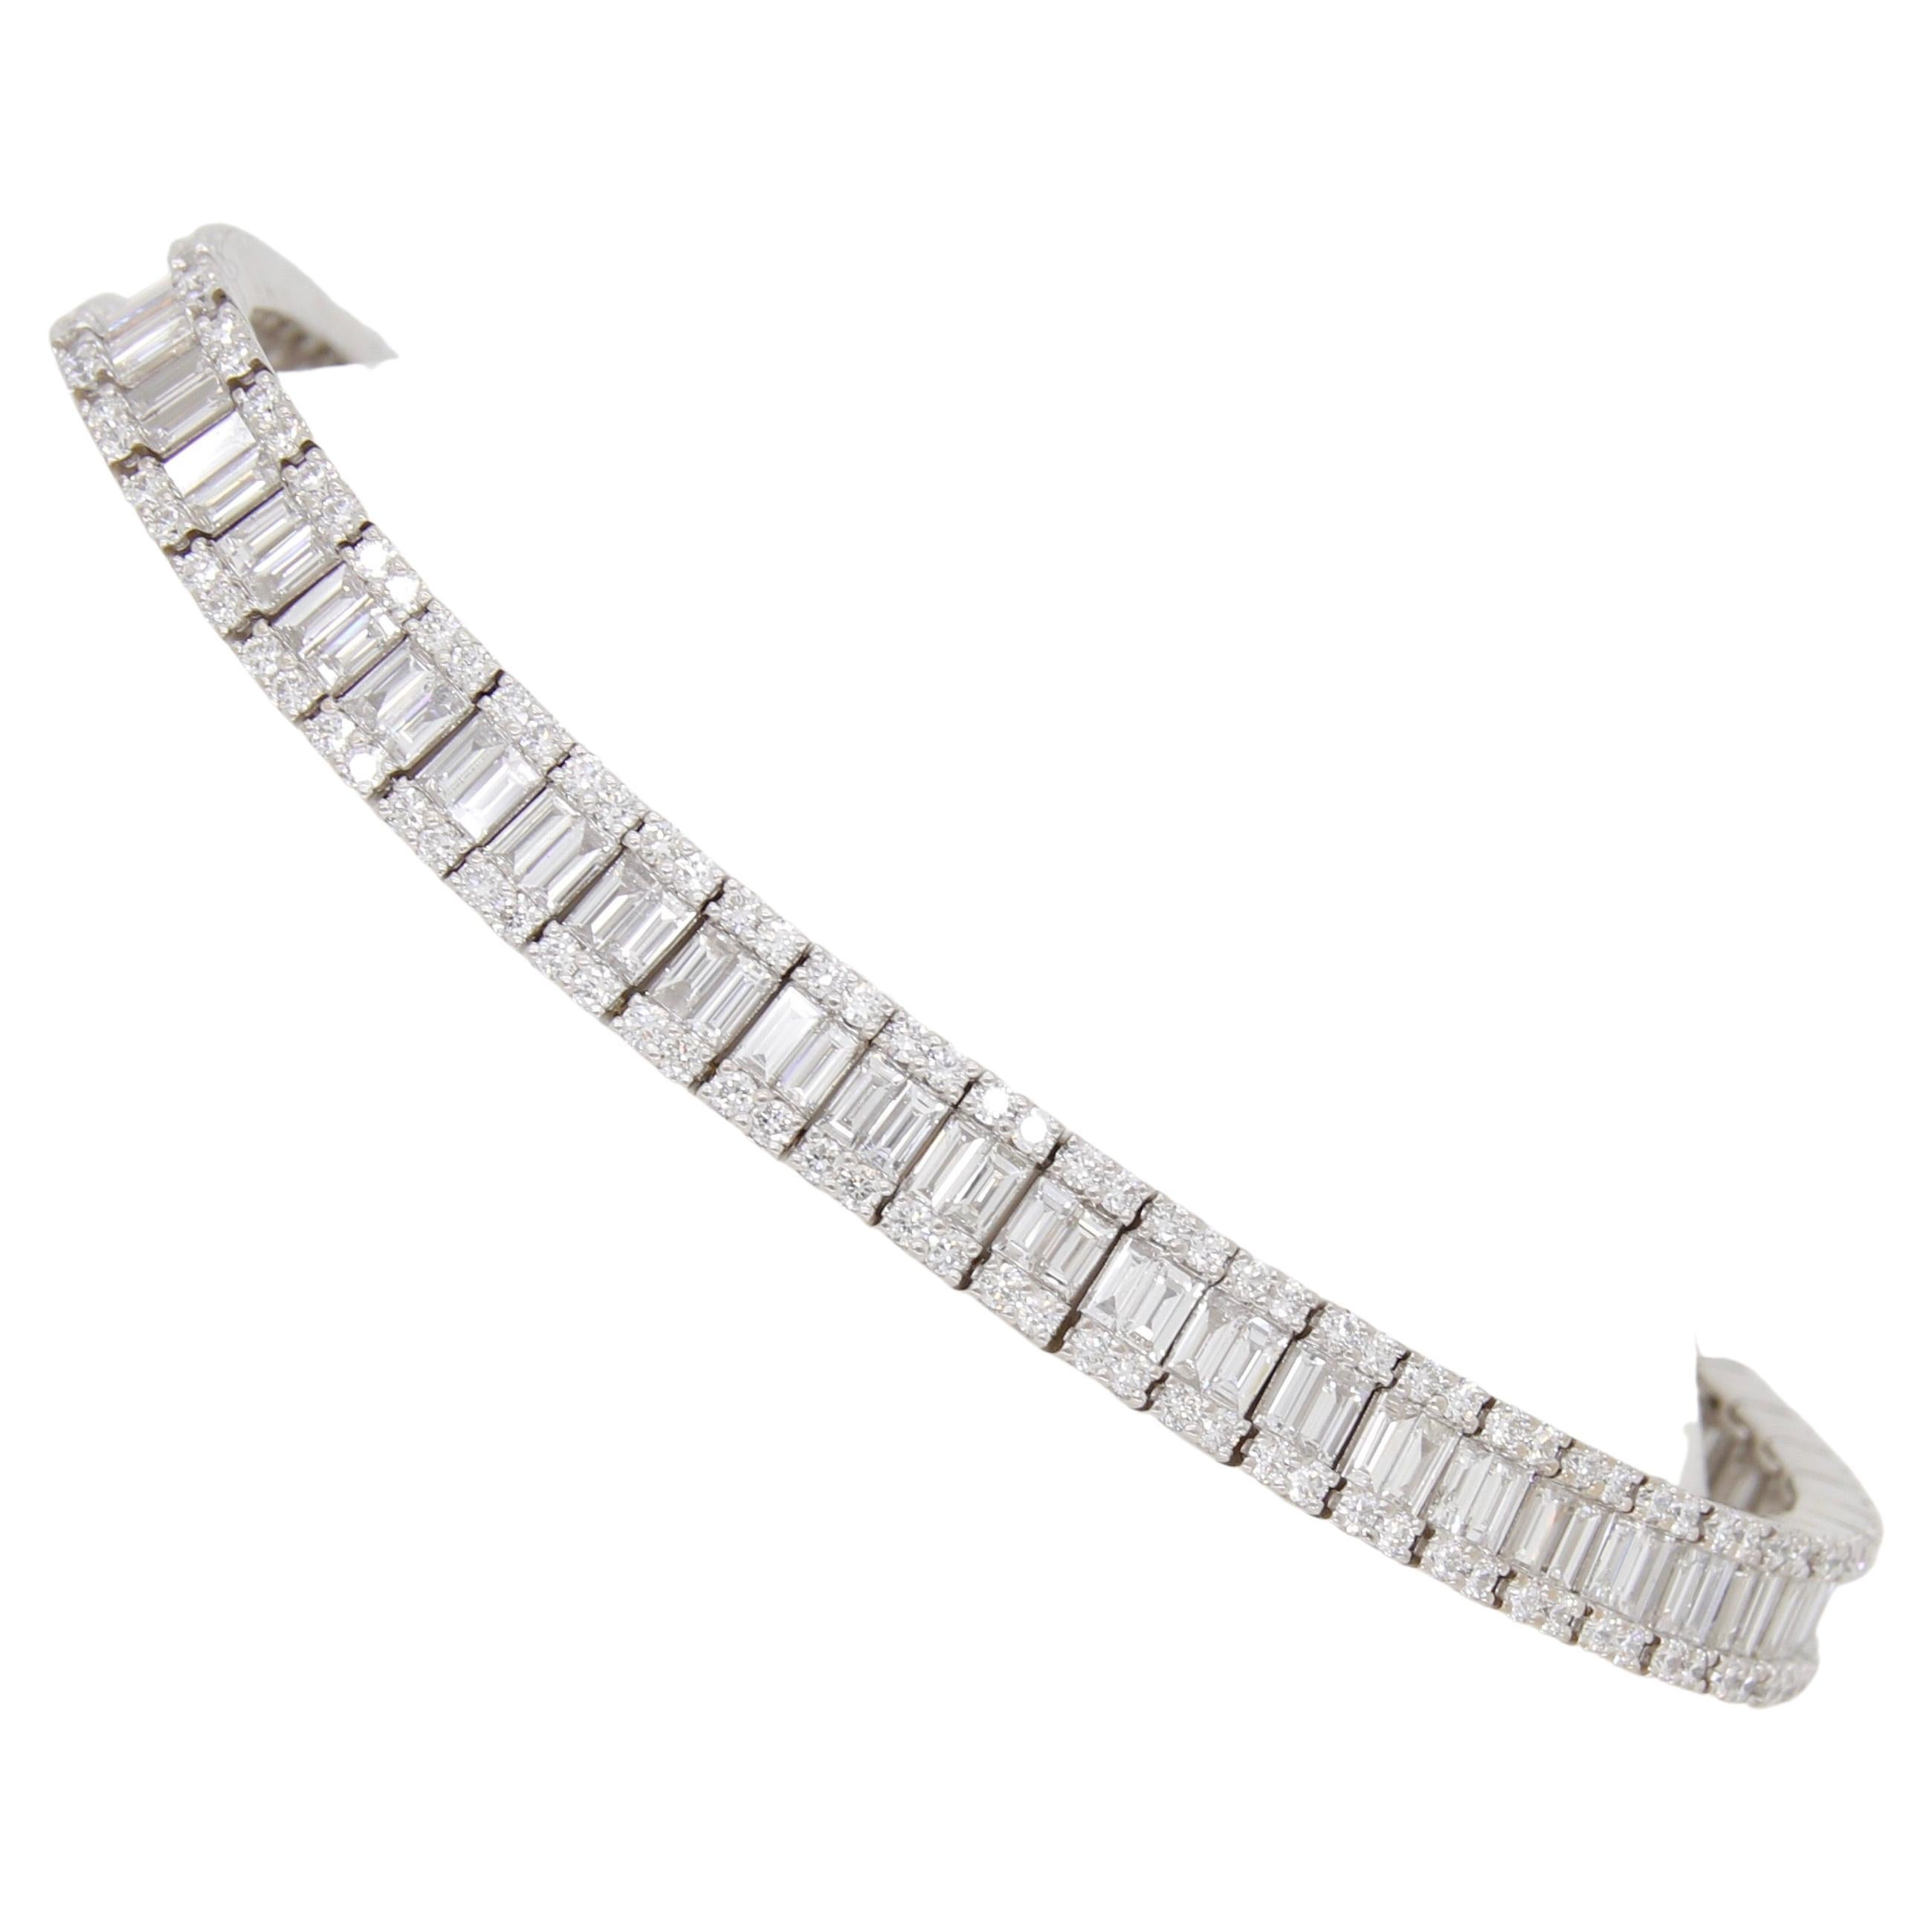 Stunning 7.44CTW Baguette & Round Diamond Bracelet in 18k White Gold For Sale